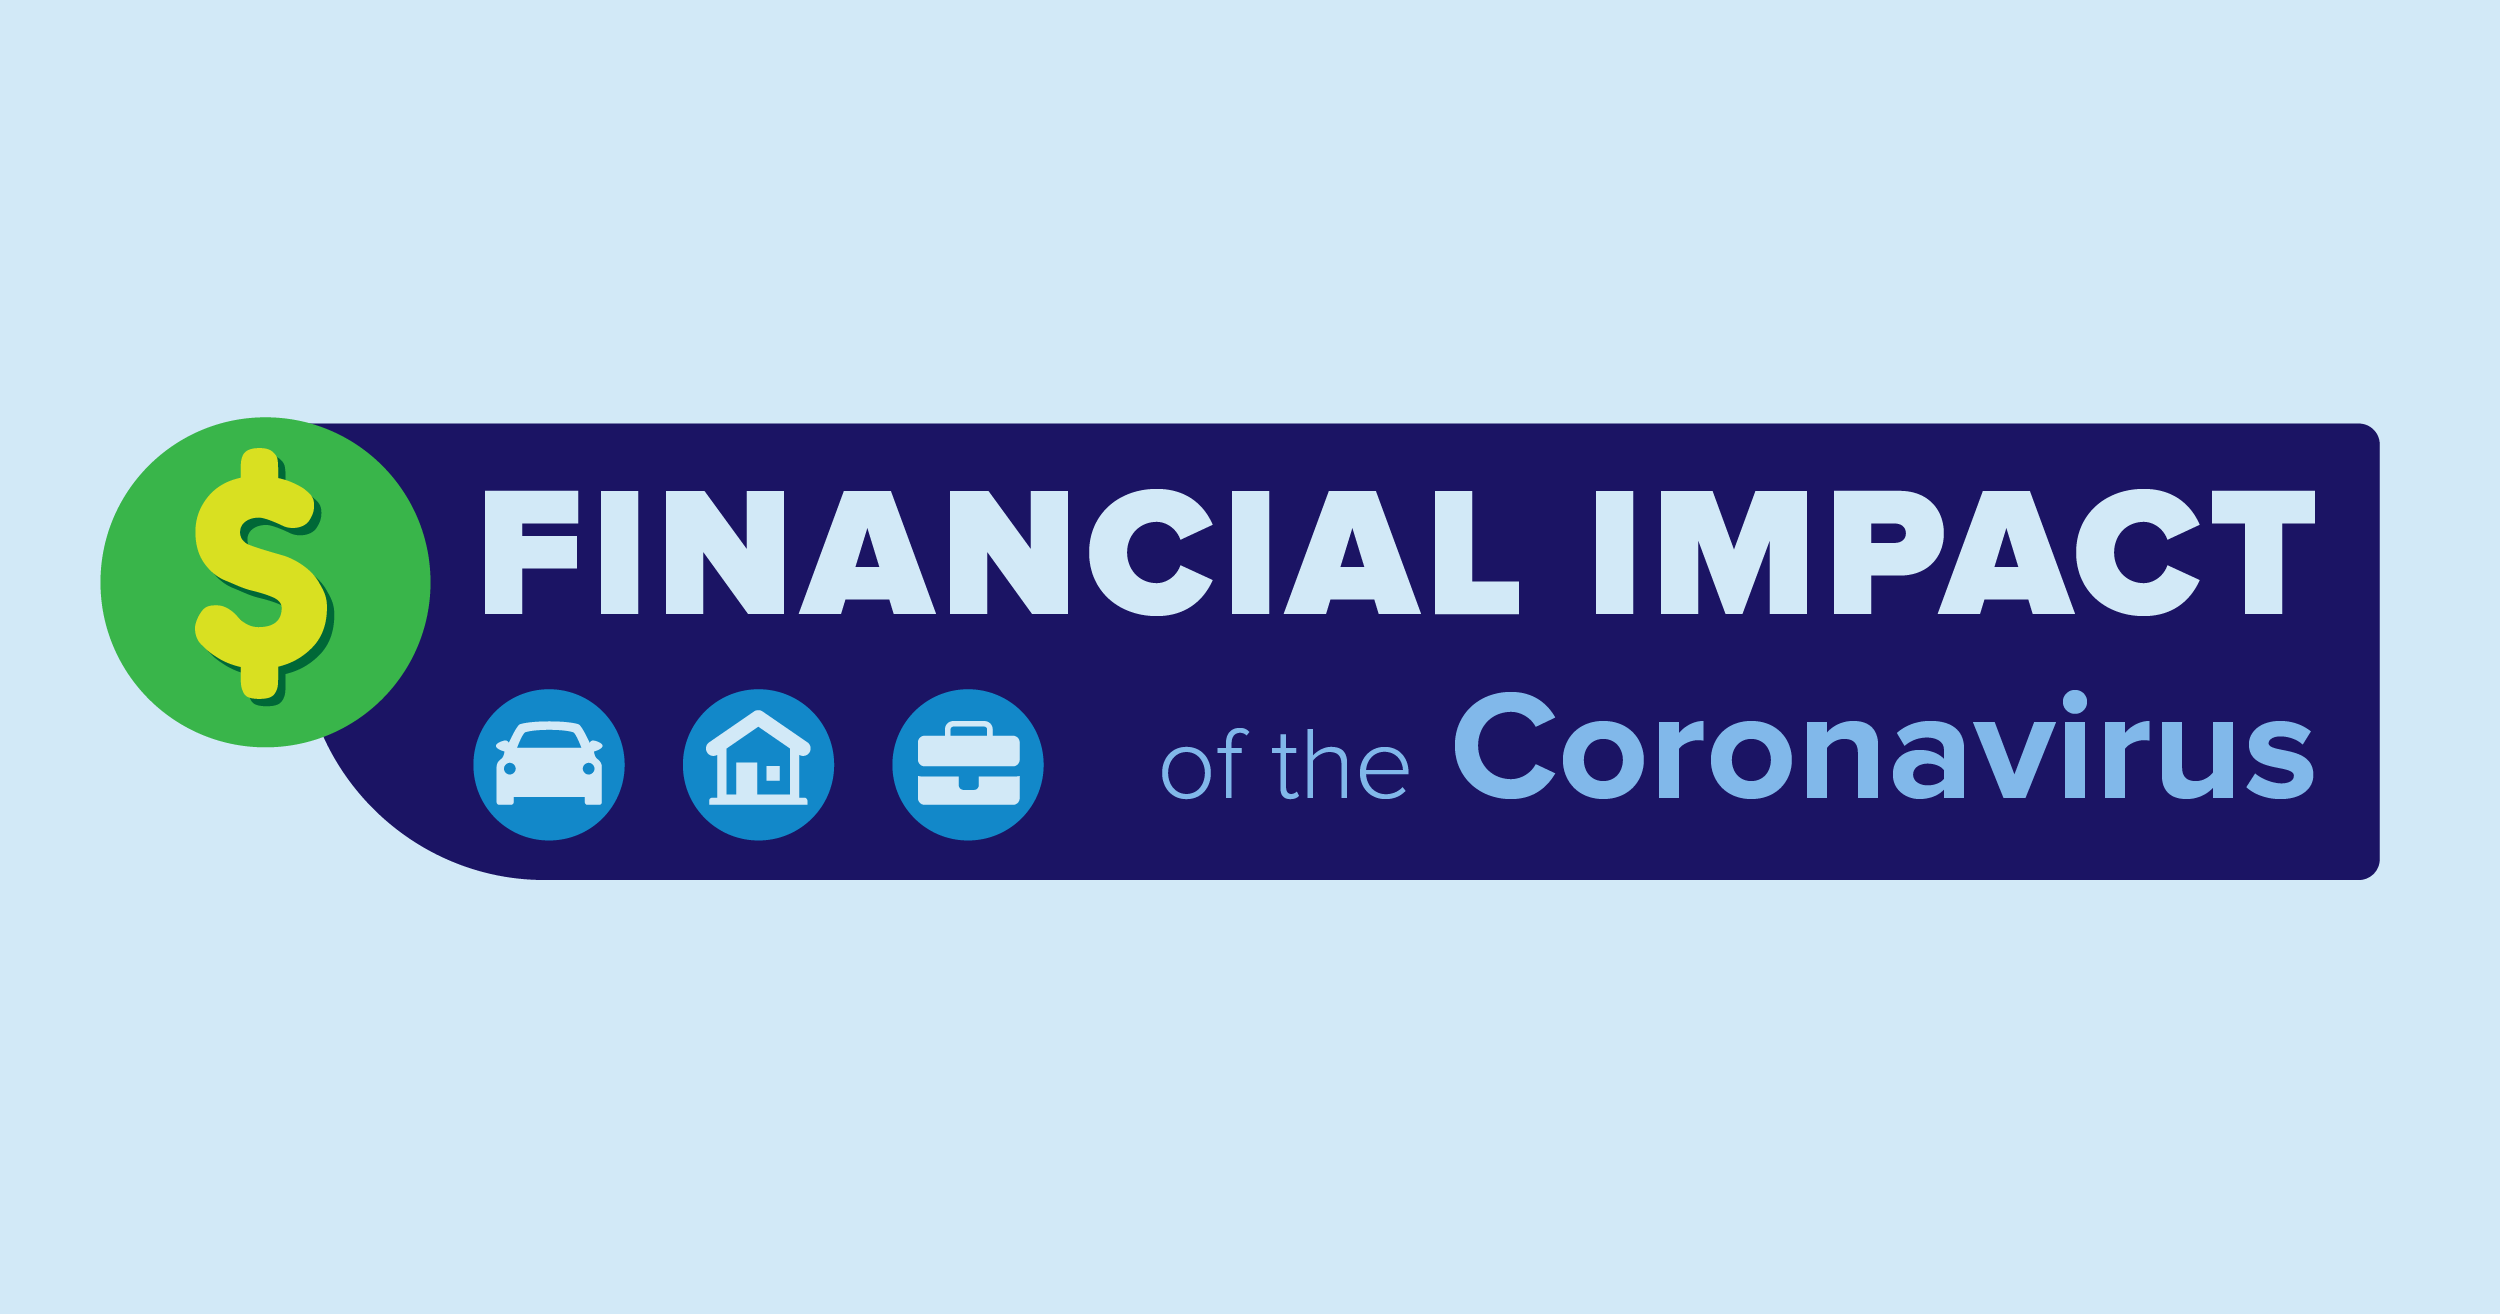 financial impact because of the Coronavirus